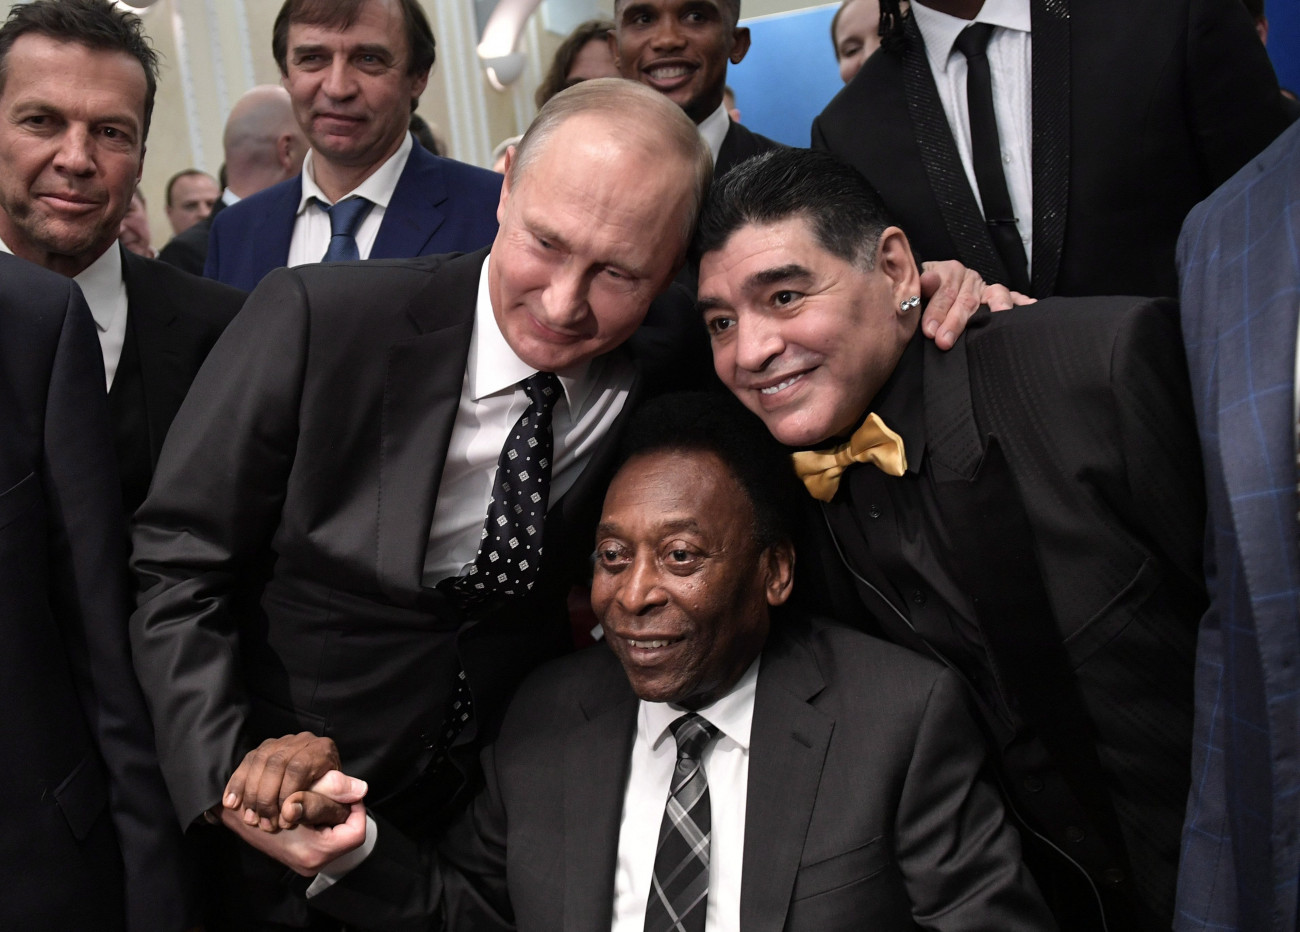 Moszkva, 2017. december 1.
Vlagyimir Putyin orosz elnök (j) és Diego Maradona egykori argentin futballistacsillag (j), valamint Edson Arantes do Nascimento, közismert nevén Pelé egykori legendás brazil labdarúgó (k) a 2018-as oroszországi labdarúgó-világbajnokság csoportbeosztásának sorsolásán a moszkvai Kremlben 2017. december 1-jén. (MTI/EPApool/Szputnyik/Kreml/Alekszej Nikolszkij)